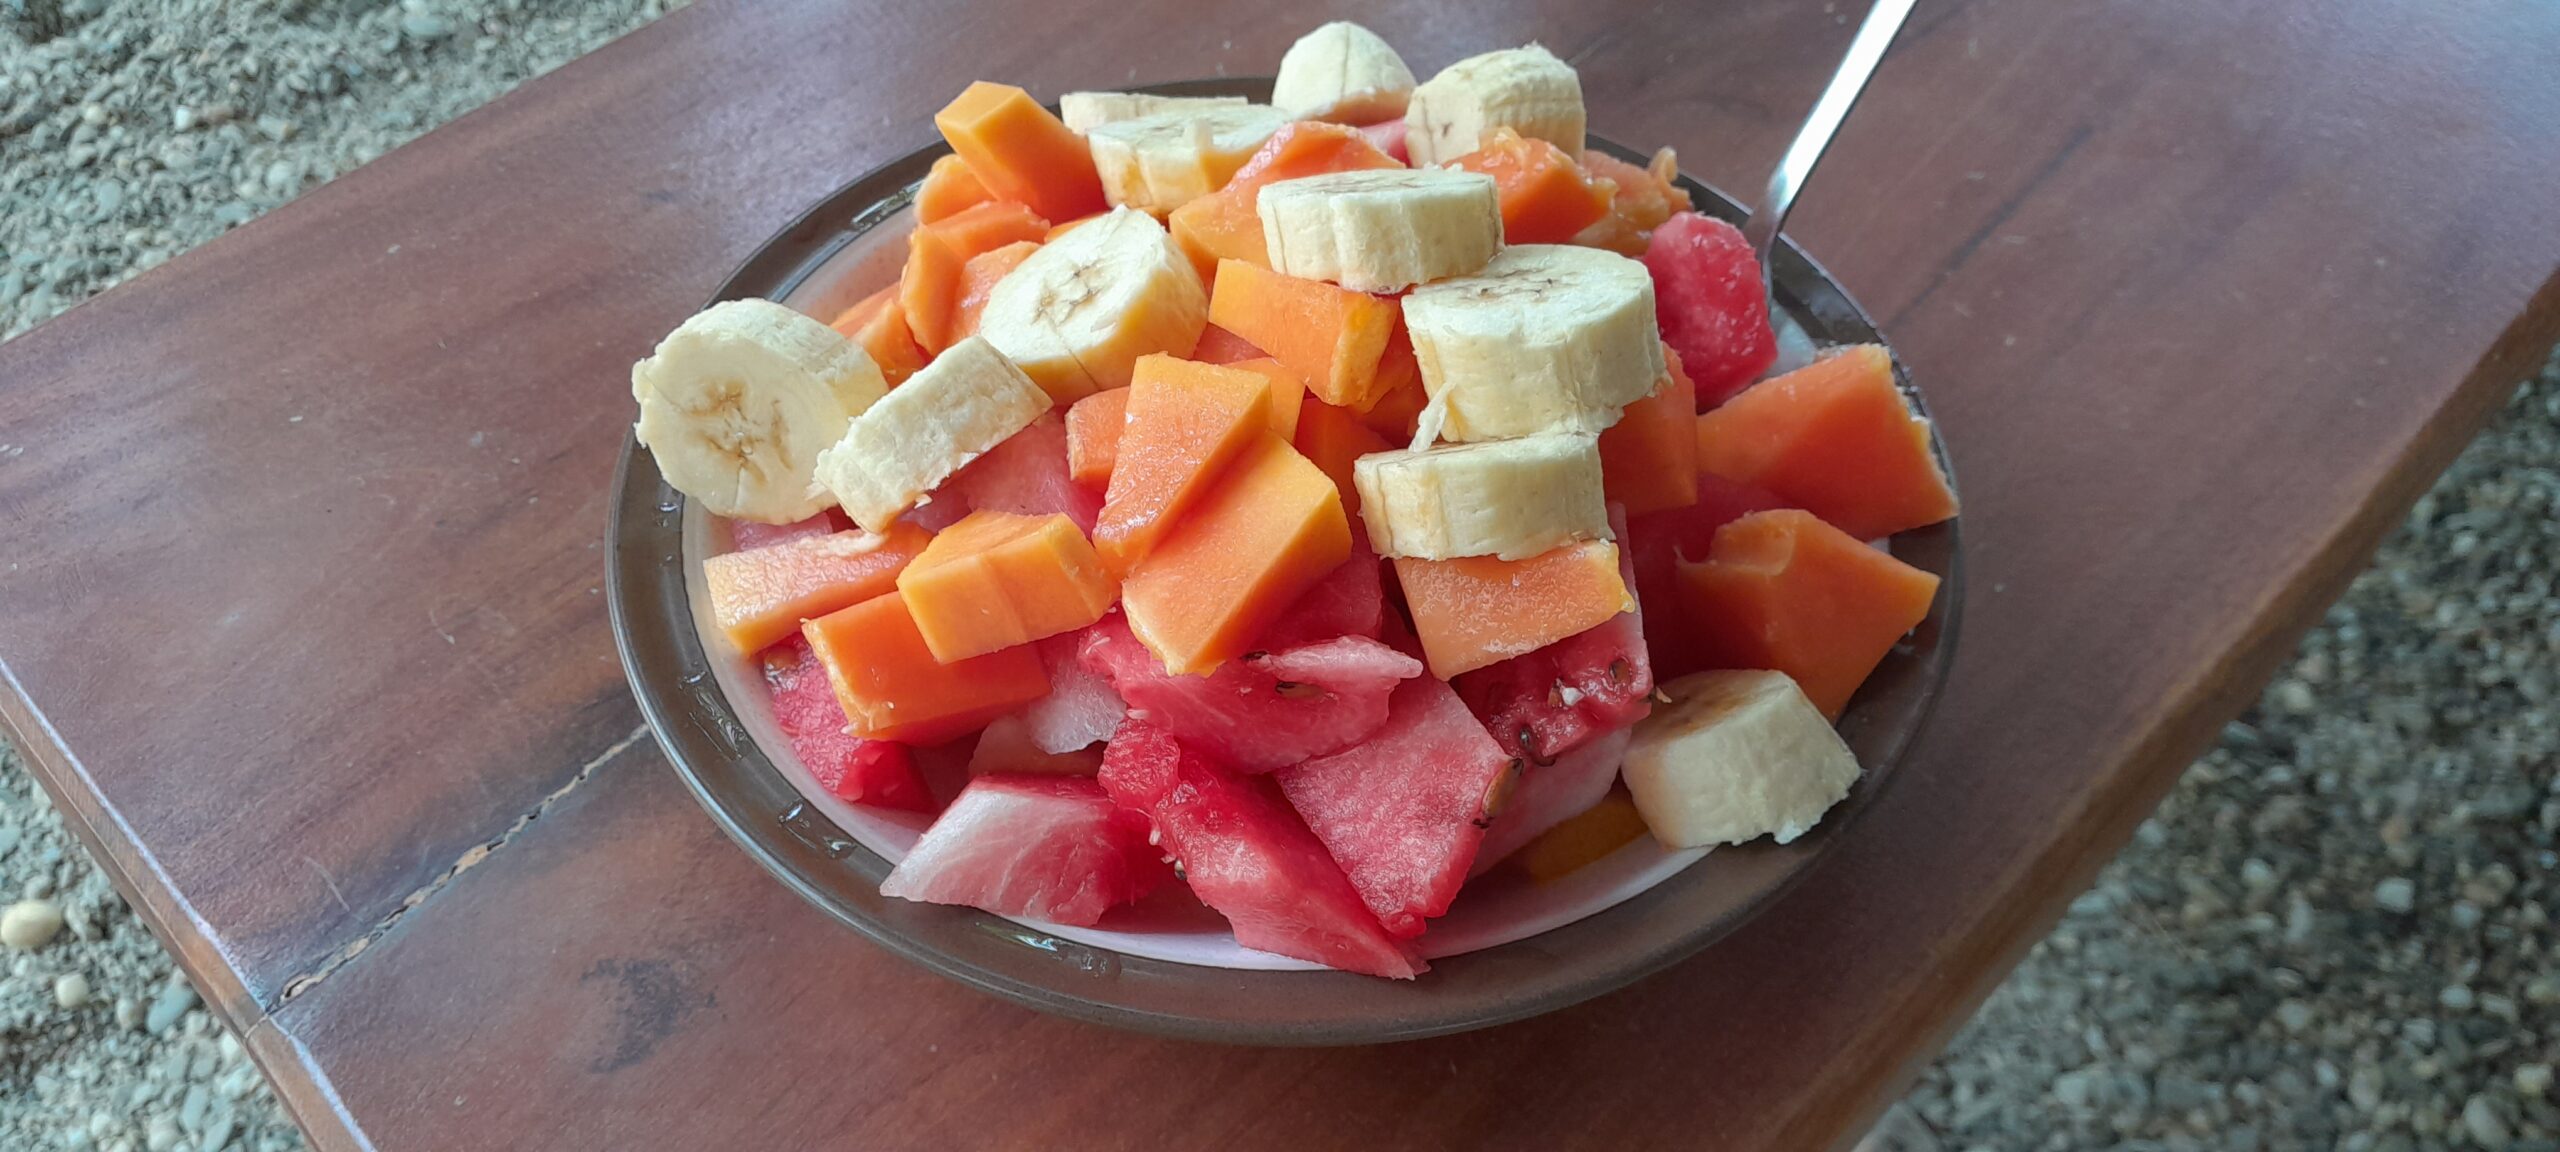 Palawan Philippines Simple Fruit Bowl Rambutan yellow and red Watermelon Papaya Banana